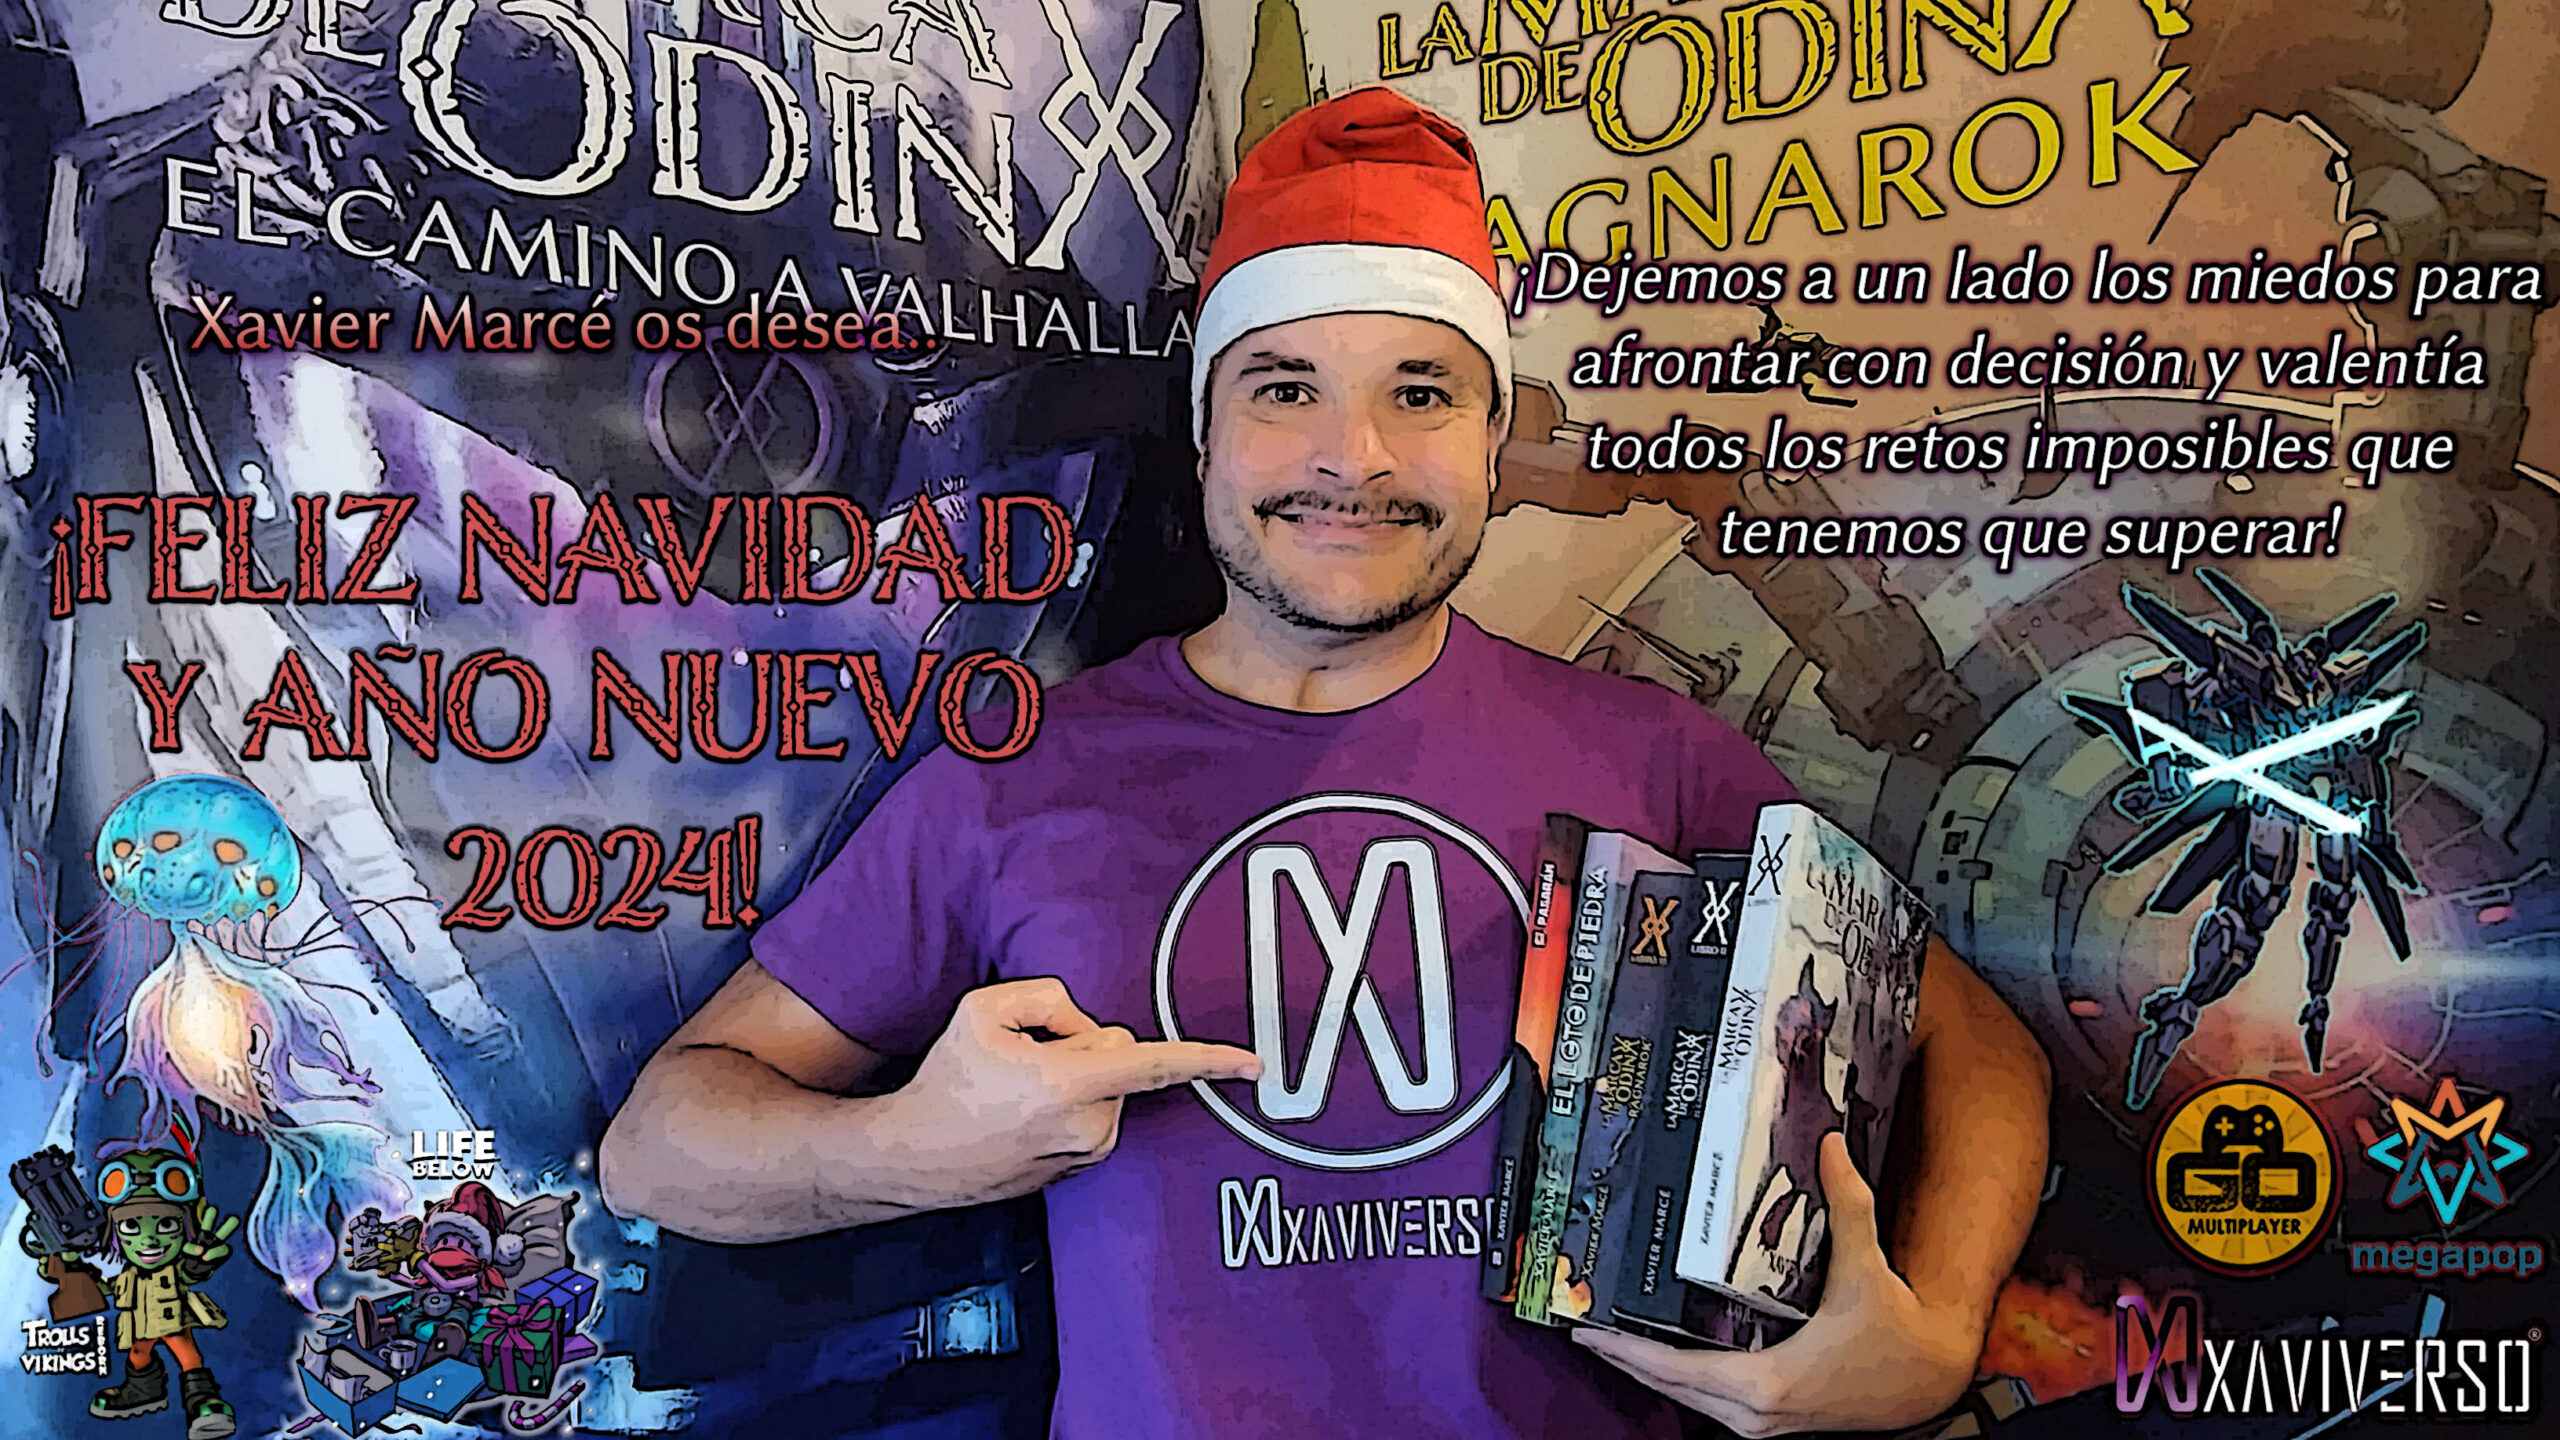 El autor y escritor Xavier Marcé desea a todos los lectores del XaviVerso feliz Navidad y próspero Año Nuevo 2024